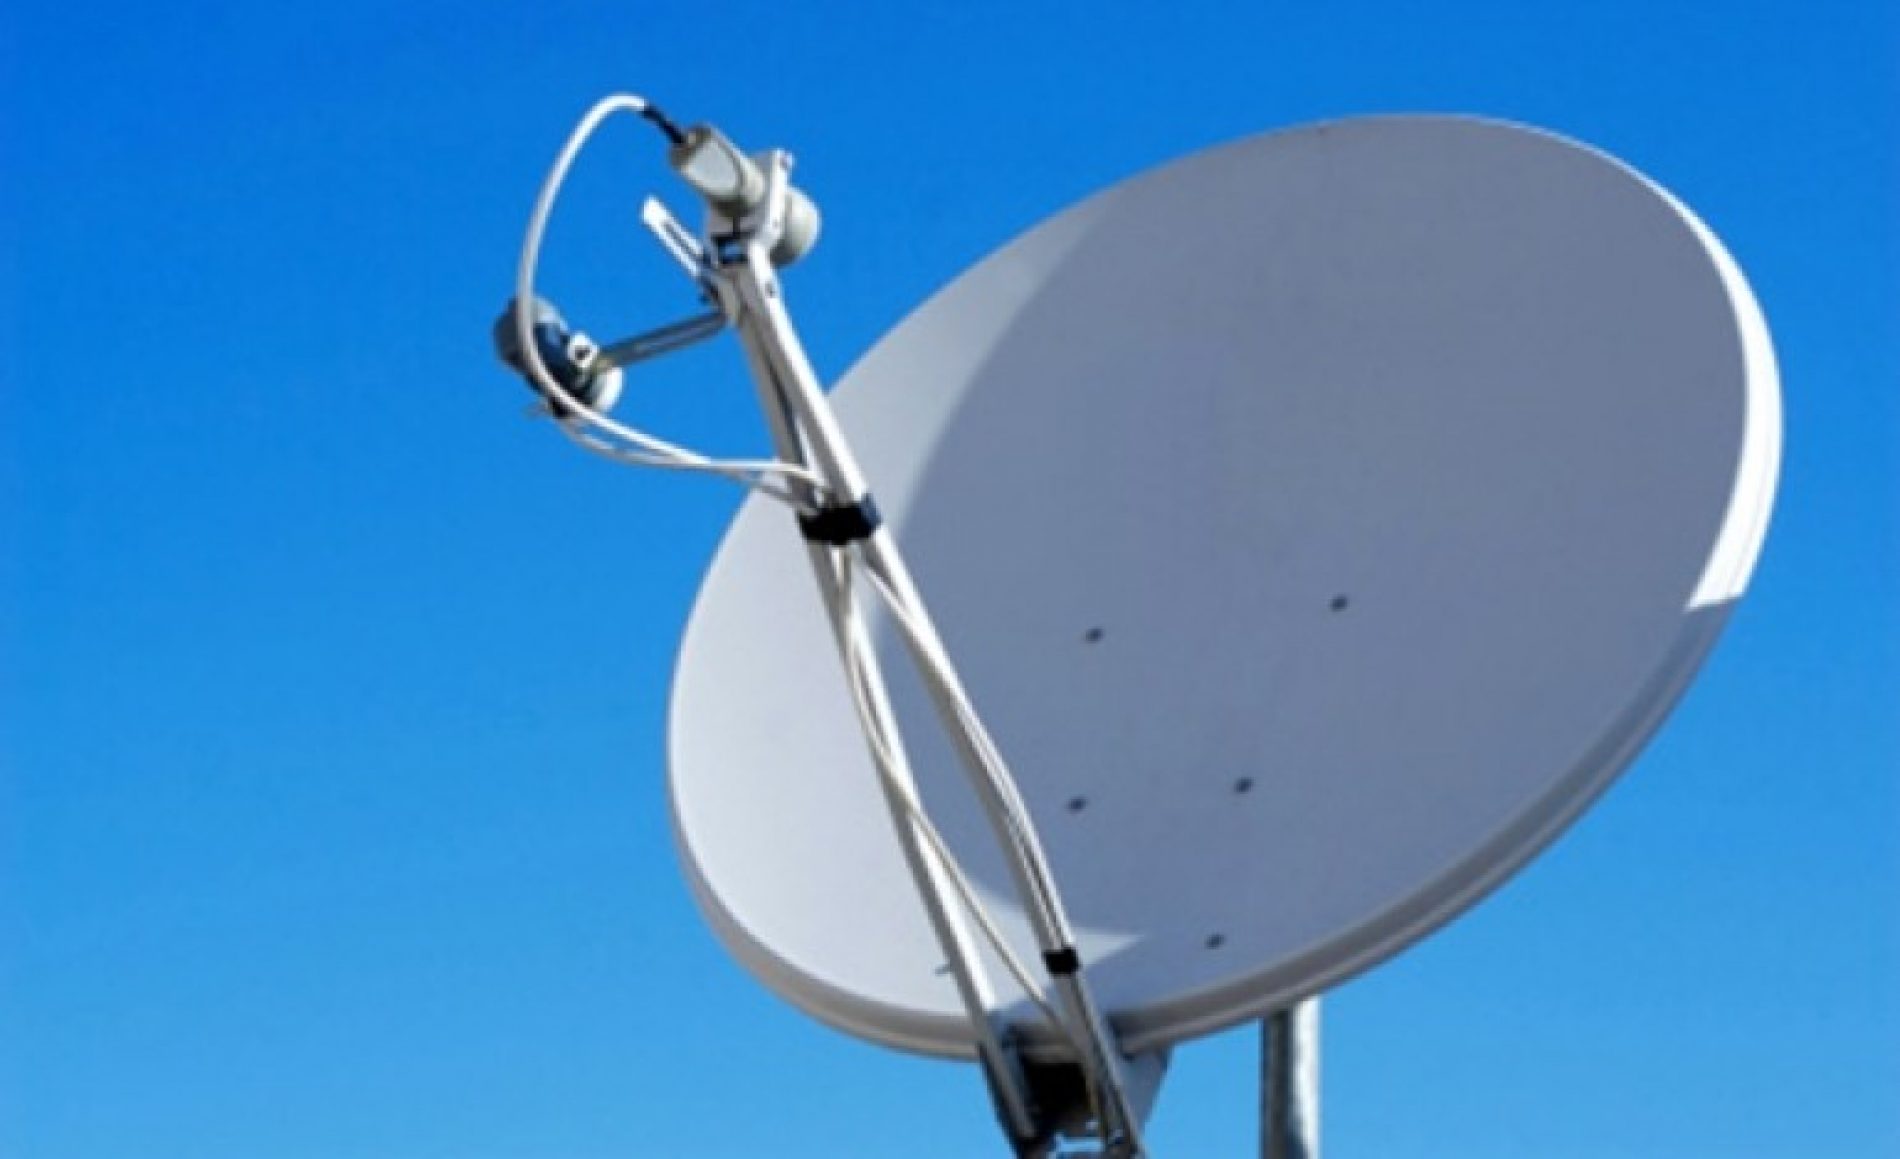 BARRETOS: Serviço de instalação de antena termina na delegacia